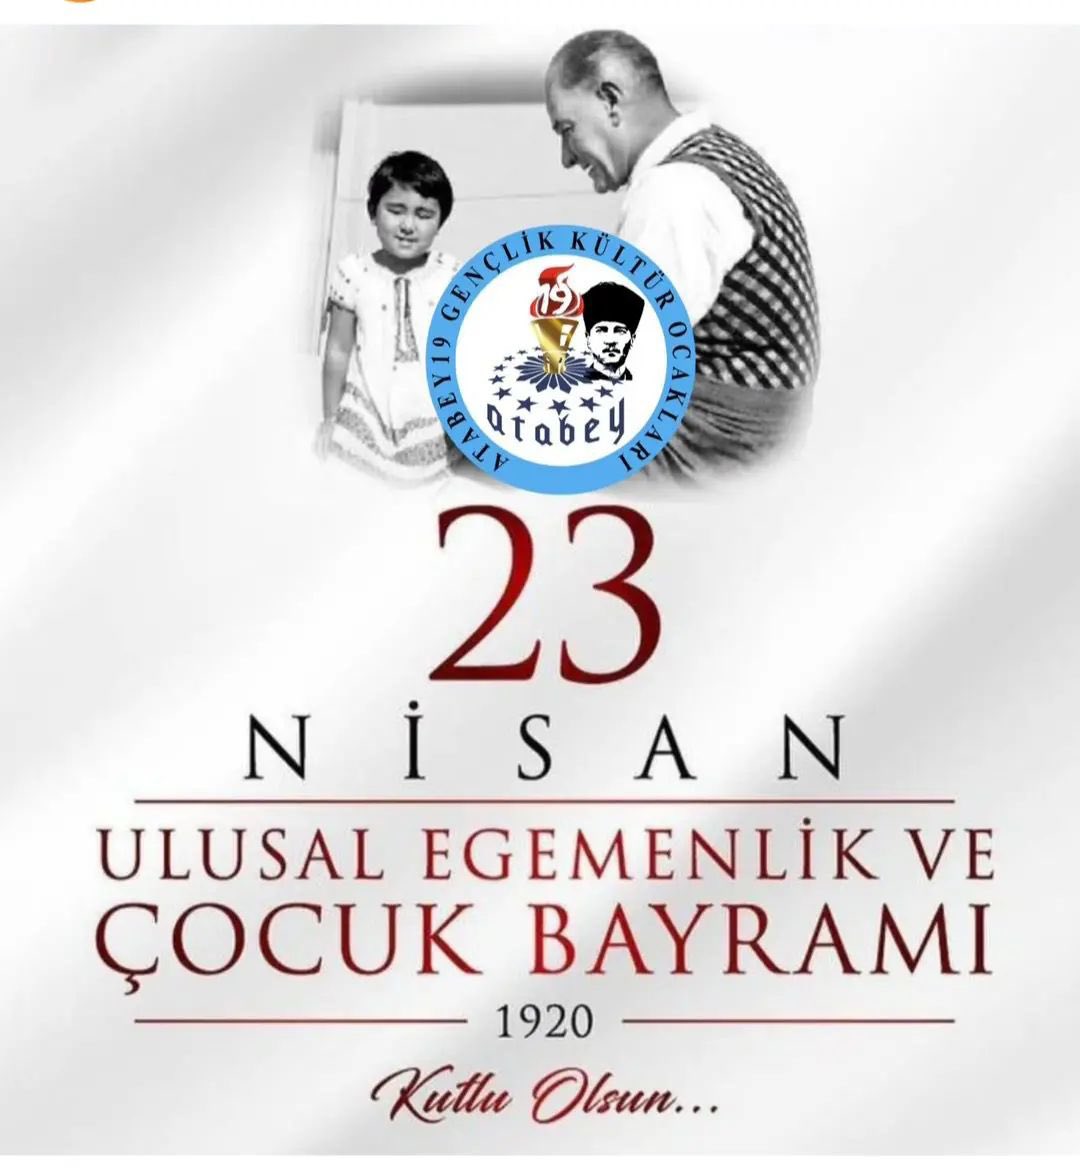 Uluğ Başbuğ Ata’mızdan armağan, 23 Nisan Ulusal Egemenlik ve Çocuk Bayramı kutlu olsun. Nu mutlu Türk’üm diyene.🇹🇷🐺🇹🇷